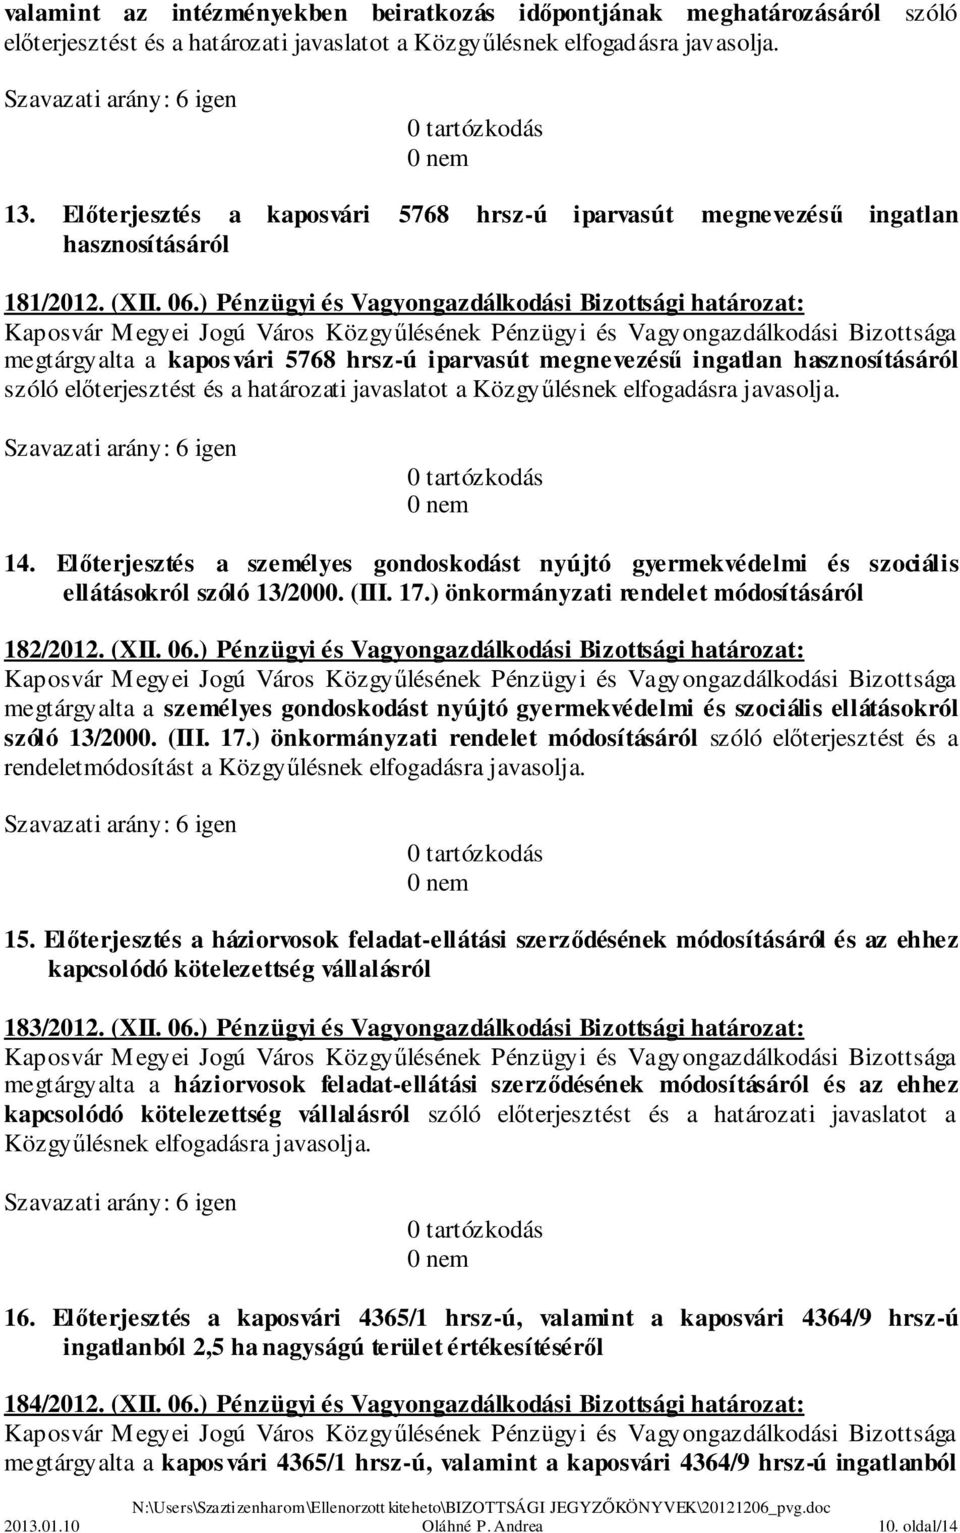 ) Pénzügyi és Vagyongazdálkodási Bizottsági határozat: megtárgyalta a kaposvári 5768 hrsz-ú iparvasút megnevezésű ingatlan hasznosításáról szóló előterjesztést és a határozati javaslatot a